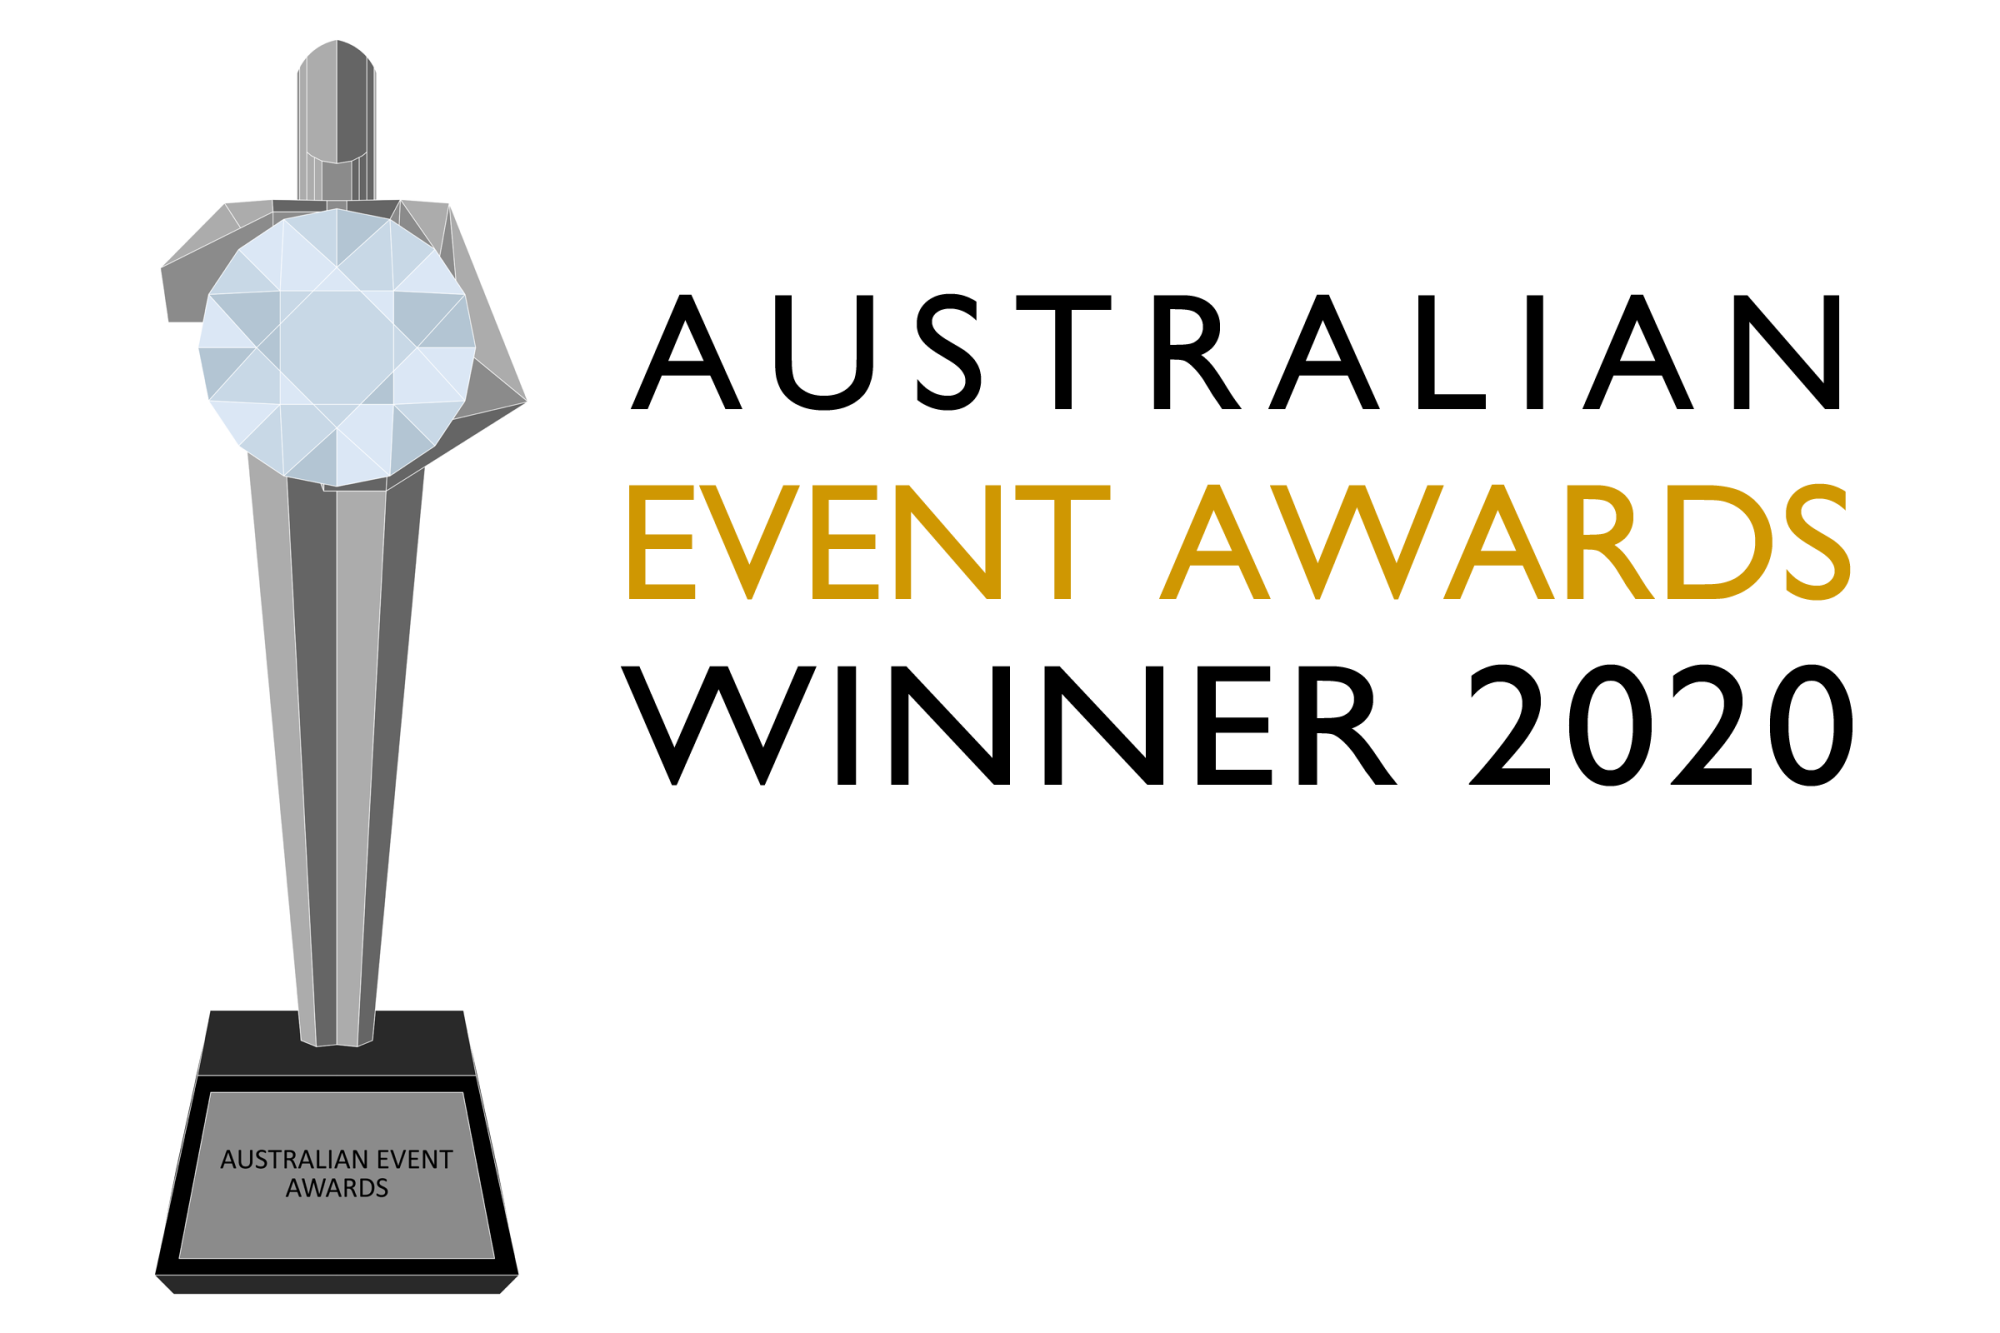 Australian Event Awards Winner 2020 logo